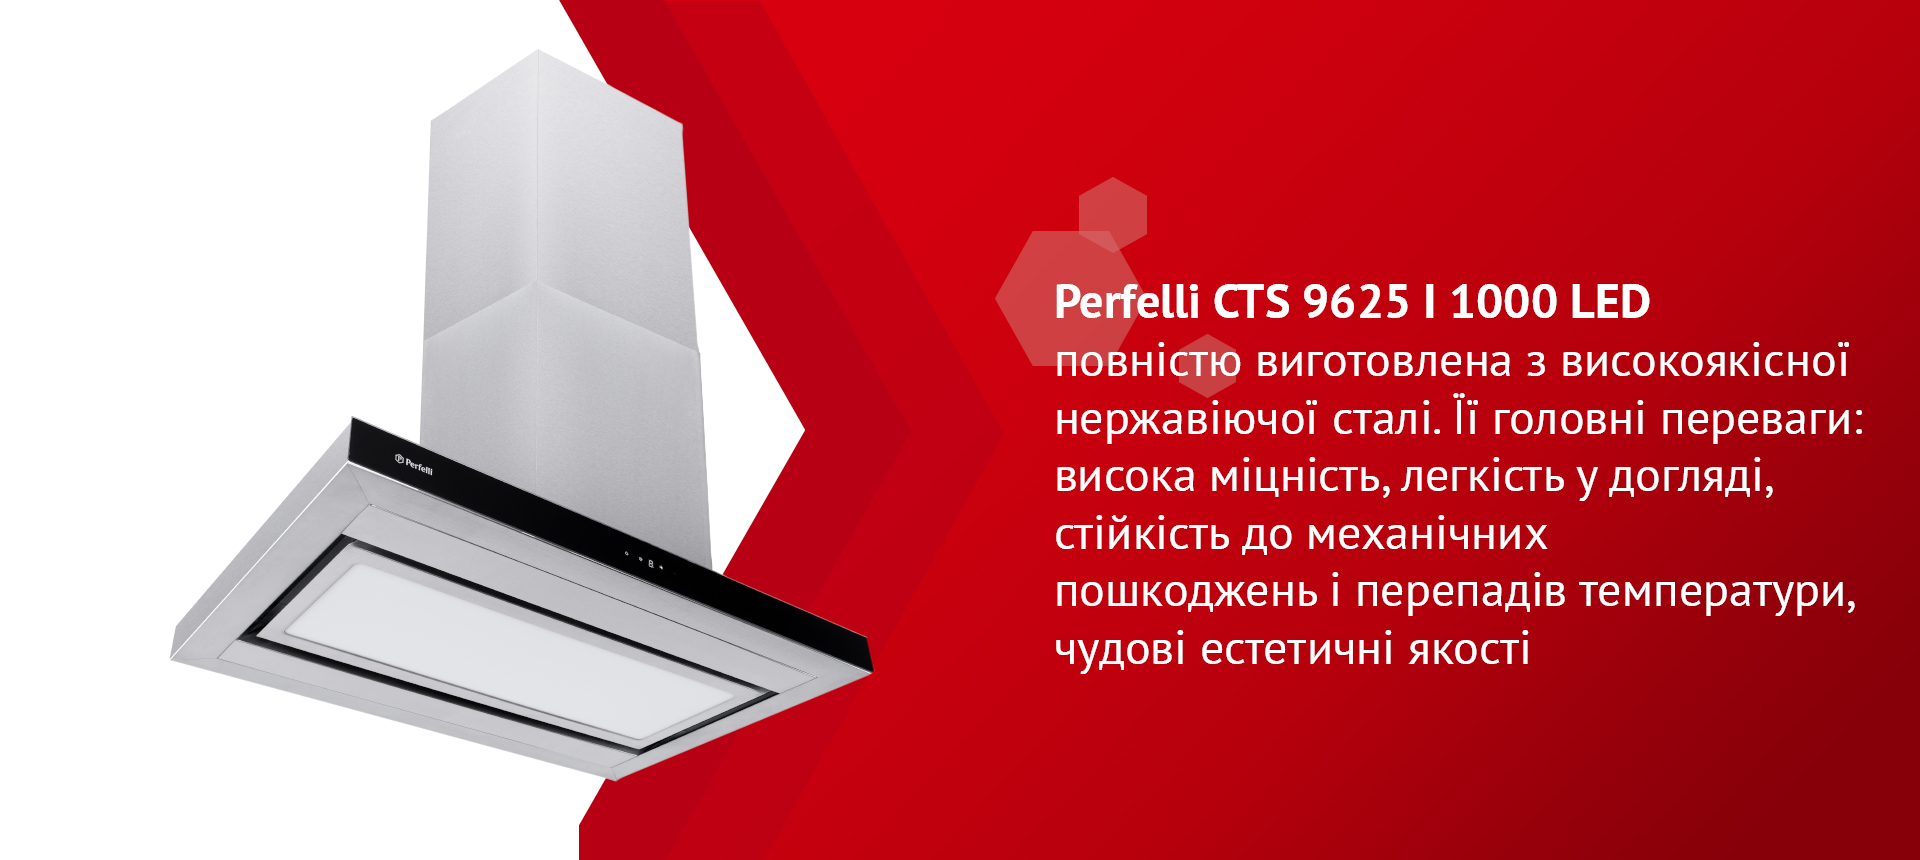 Perfelli CTS 9625 I 1000 LED повністю виготовлена з високоякісної нержавіючої сталі. Її головні переваги: висока міцність, легкість у догляді, стійкість до механічних пошкоджень і перепадів температури, чудові естетичні якості